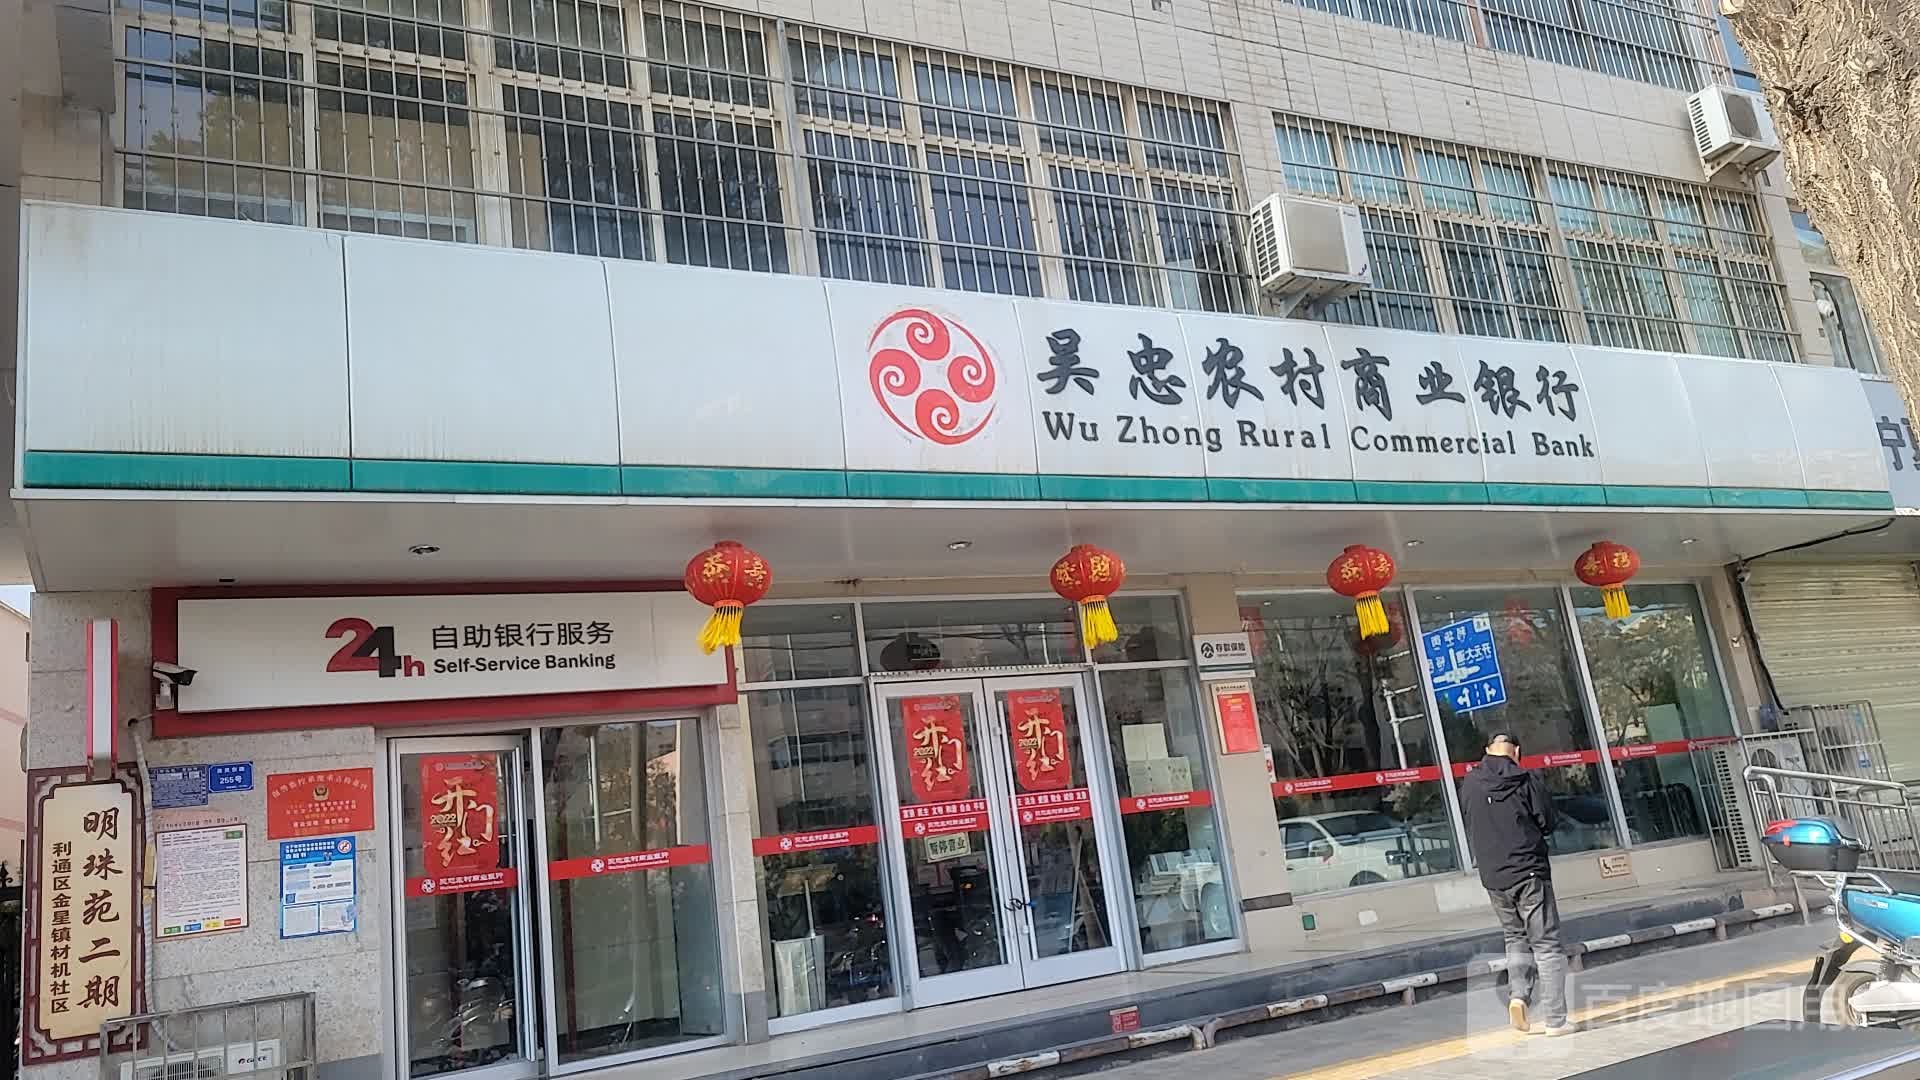 吴中农村商业银行24小时自助银行(古城支行)